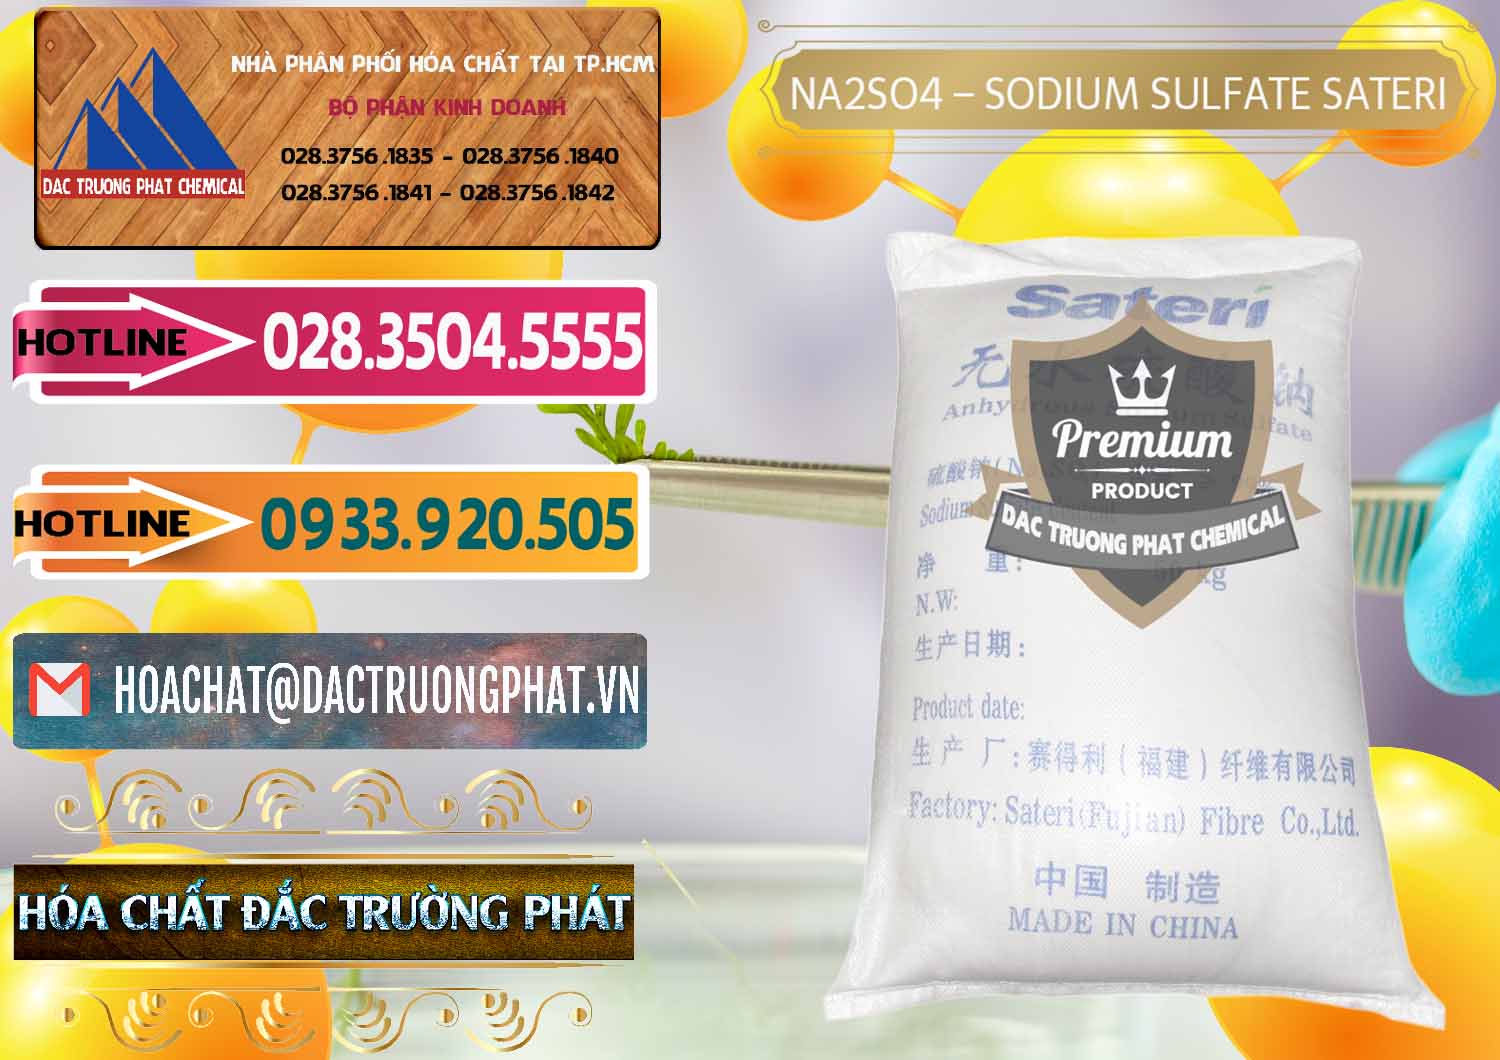 Nơi cung ứng & bán Sodium Sulphate - Muối Sunfat Na2SO4 Sateri Trung Quốc China - 0100 - Cty phân phối và kinh doanh hóa chất tại TP.HCM - dactruongphat.vn